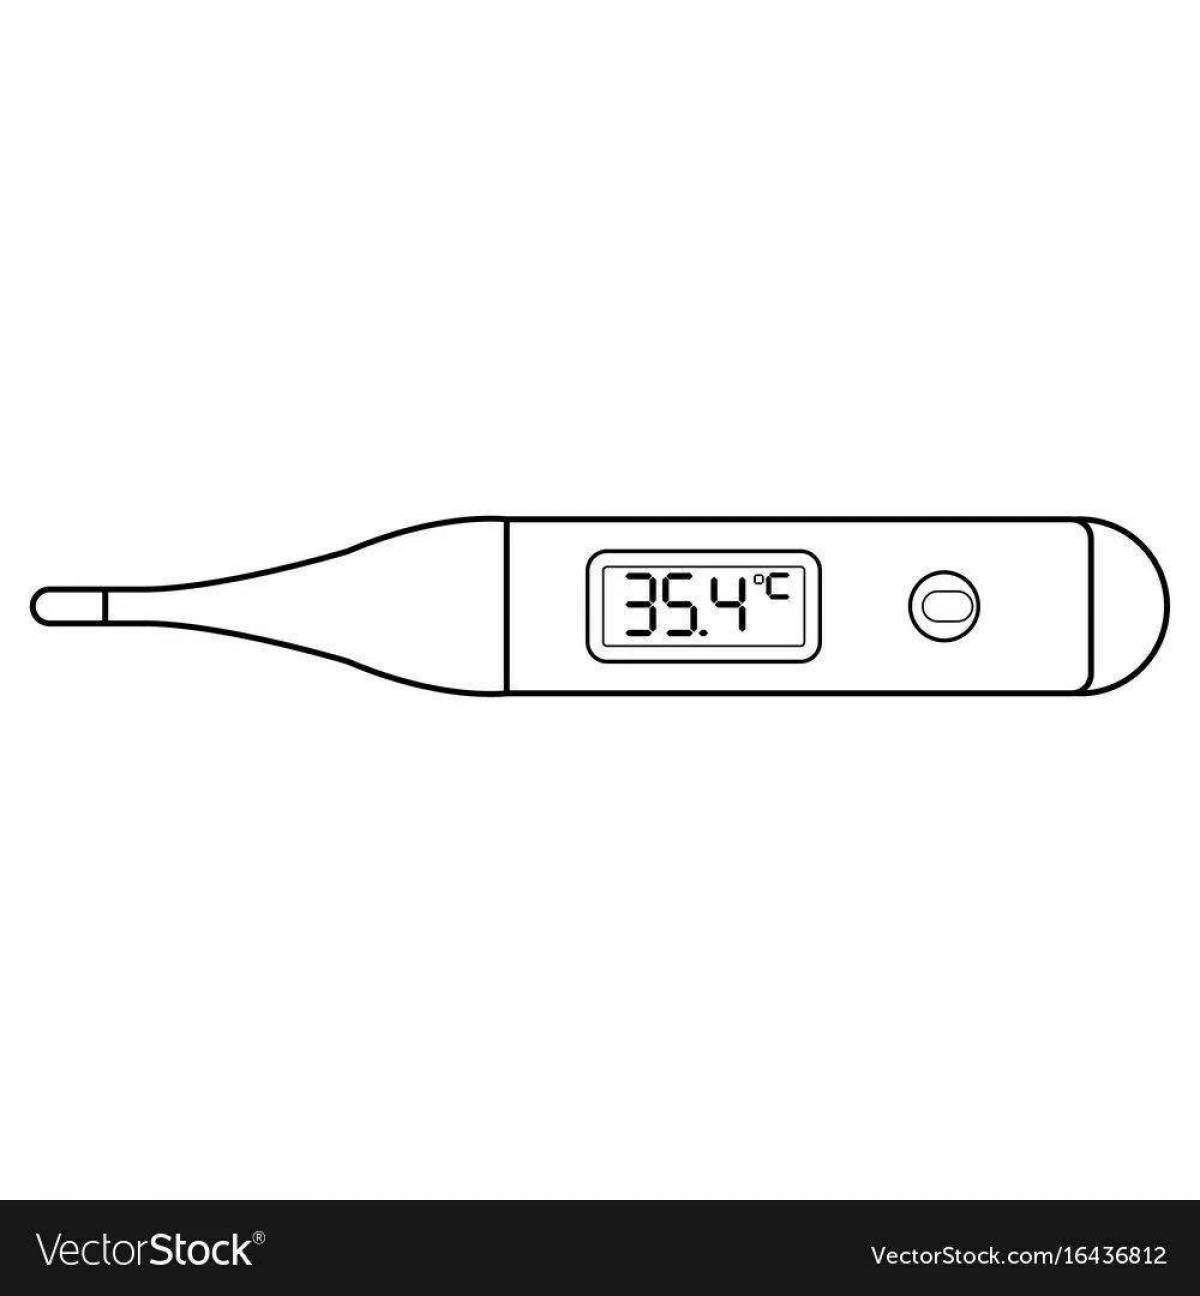 Какой термометр для тела самый точный и безопасный в 2021 году?